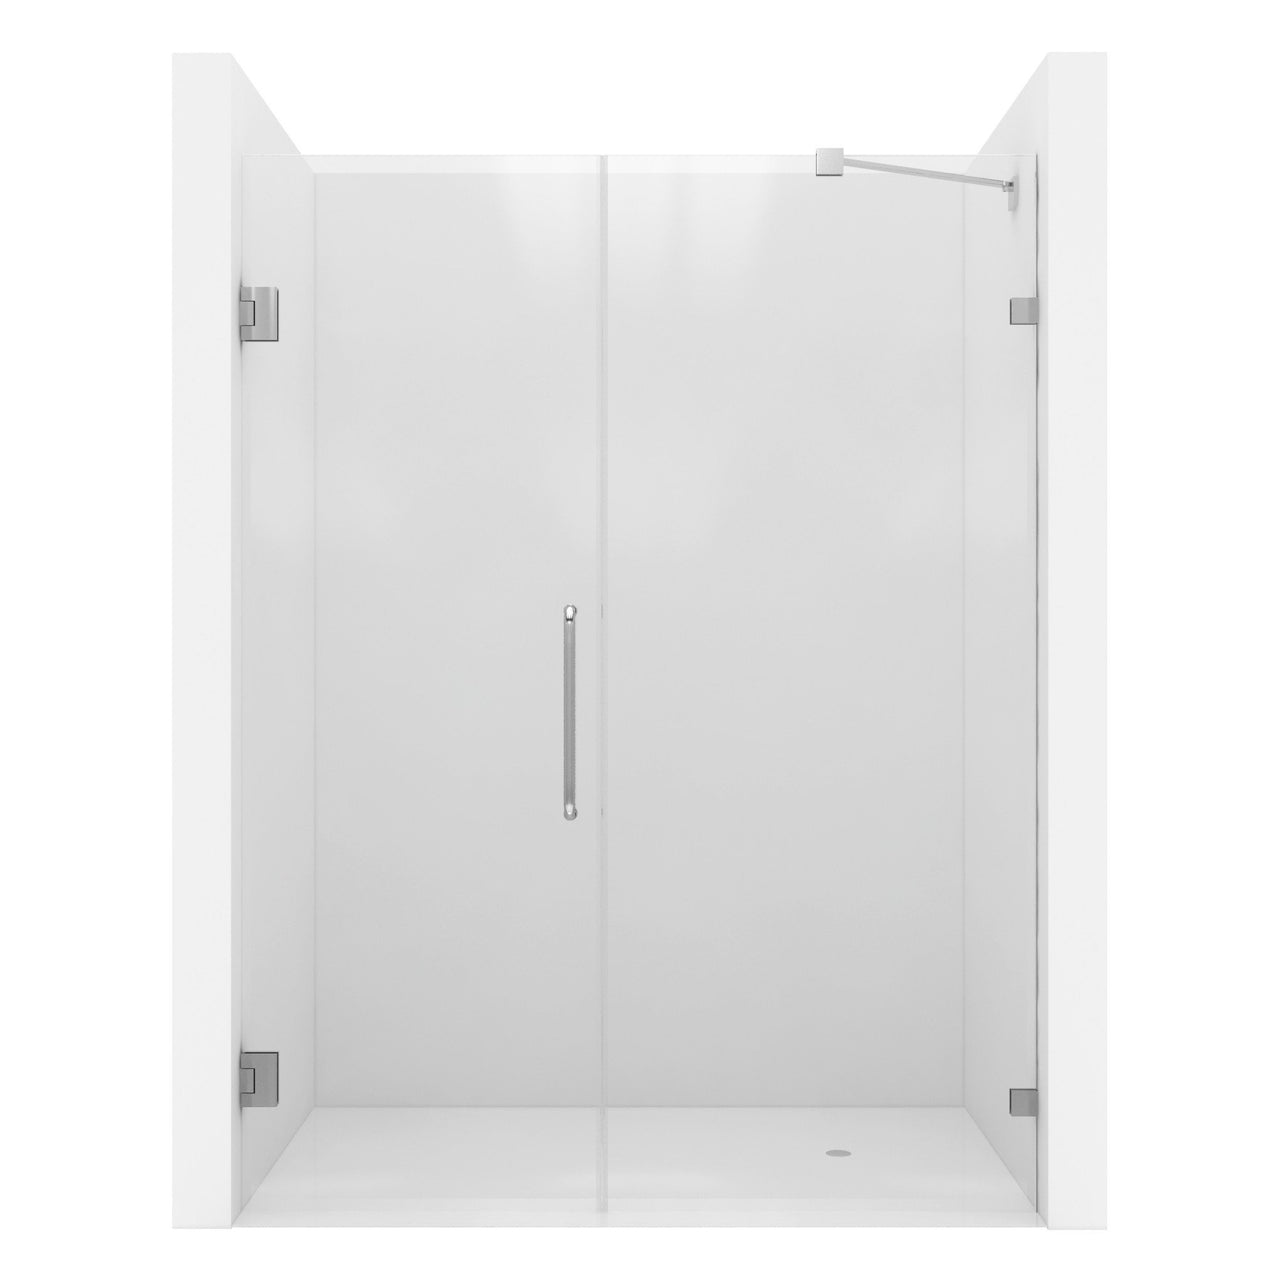 ANZZI Consort Series SD-AZ07-01CH Shower Doors Shower Doors ANZZI 